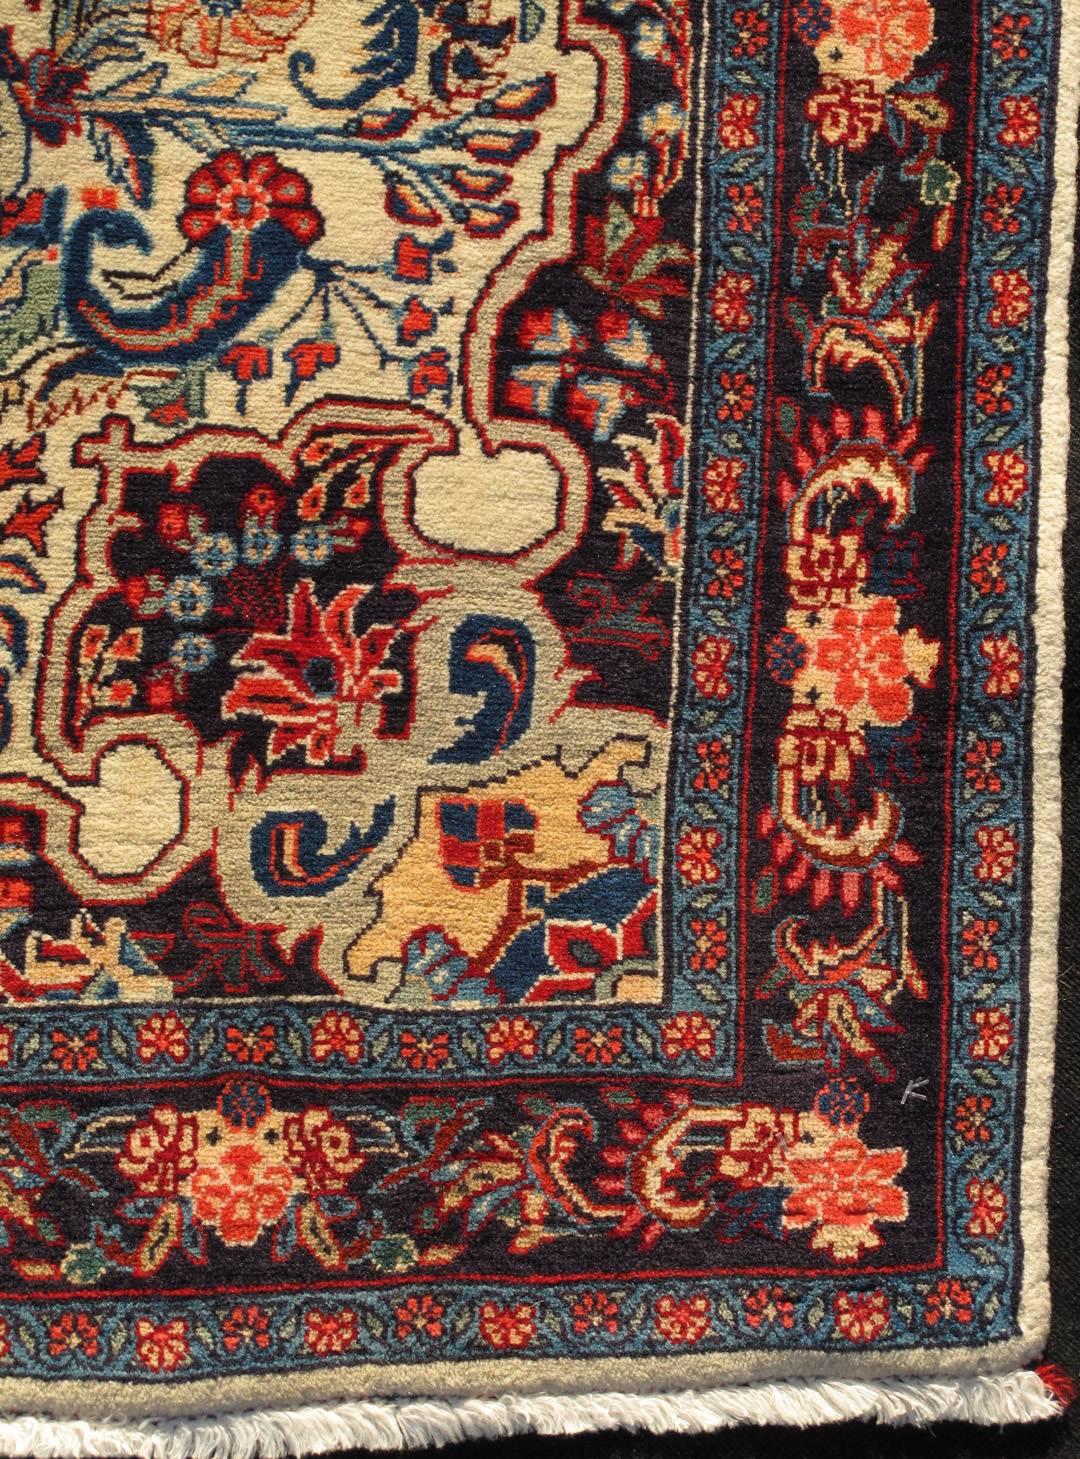 Persischer Bidjar Vintage-Teppich mit elfenbeinfarbenem Hintergrund, mehreren Farben und klassischem Design Teppich/10-KE-304

Dieser Perserteppich auf elfenbeinfarbenem Hintergrund zeigt ein klassisches Design in verschiedenen Farben  
Maße: 3'6 x